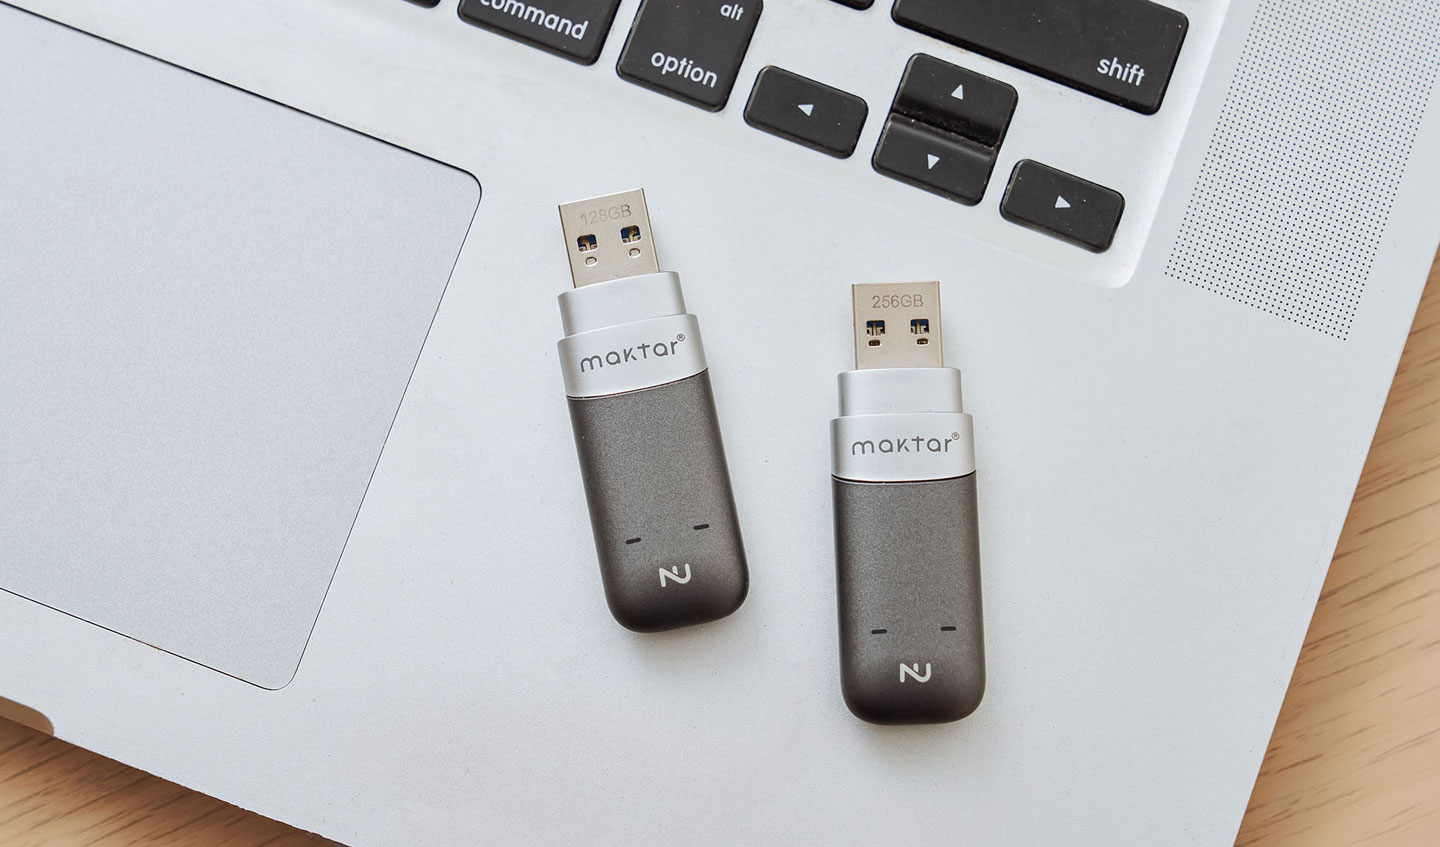 移除隨身碟保蓋可看到 USB 3.1 Type-A 介面，並可看到刻印的容量標示。